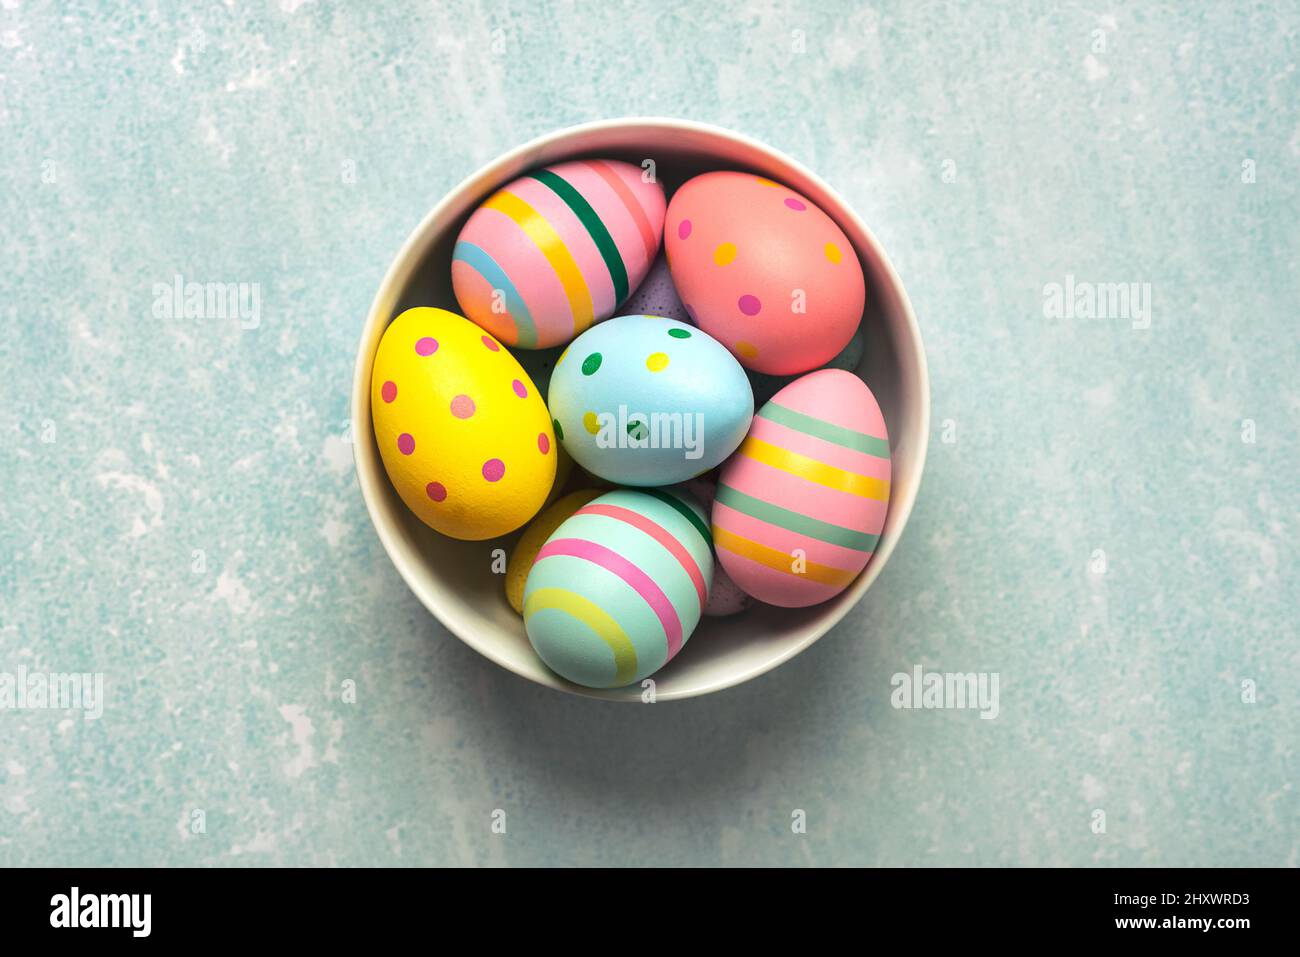 Felices Pascuas. huevos de pascua coloreados pintados en un tazón en la mesa azul Foto de stock